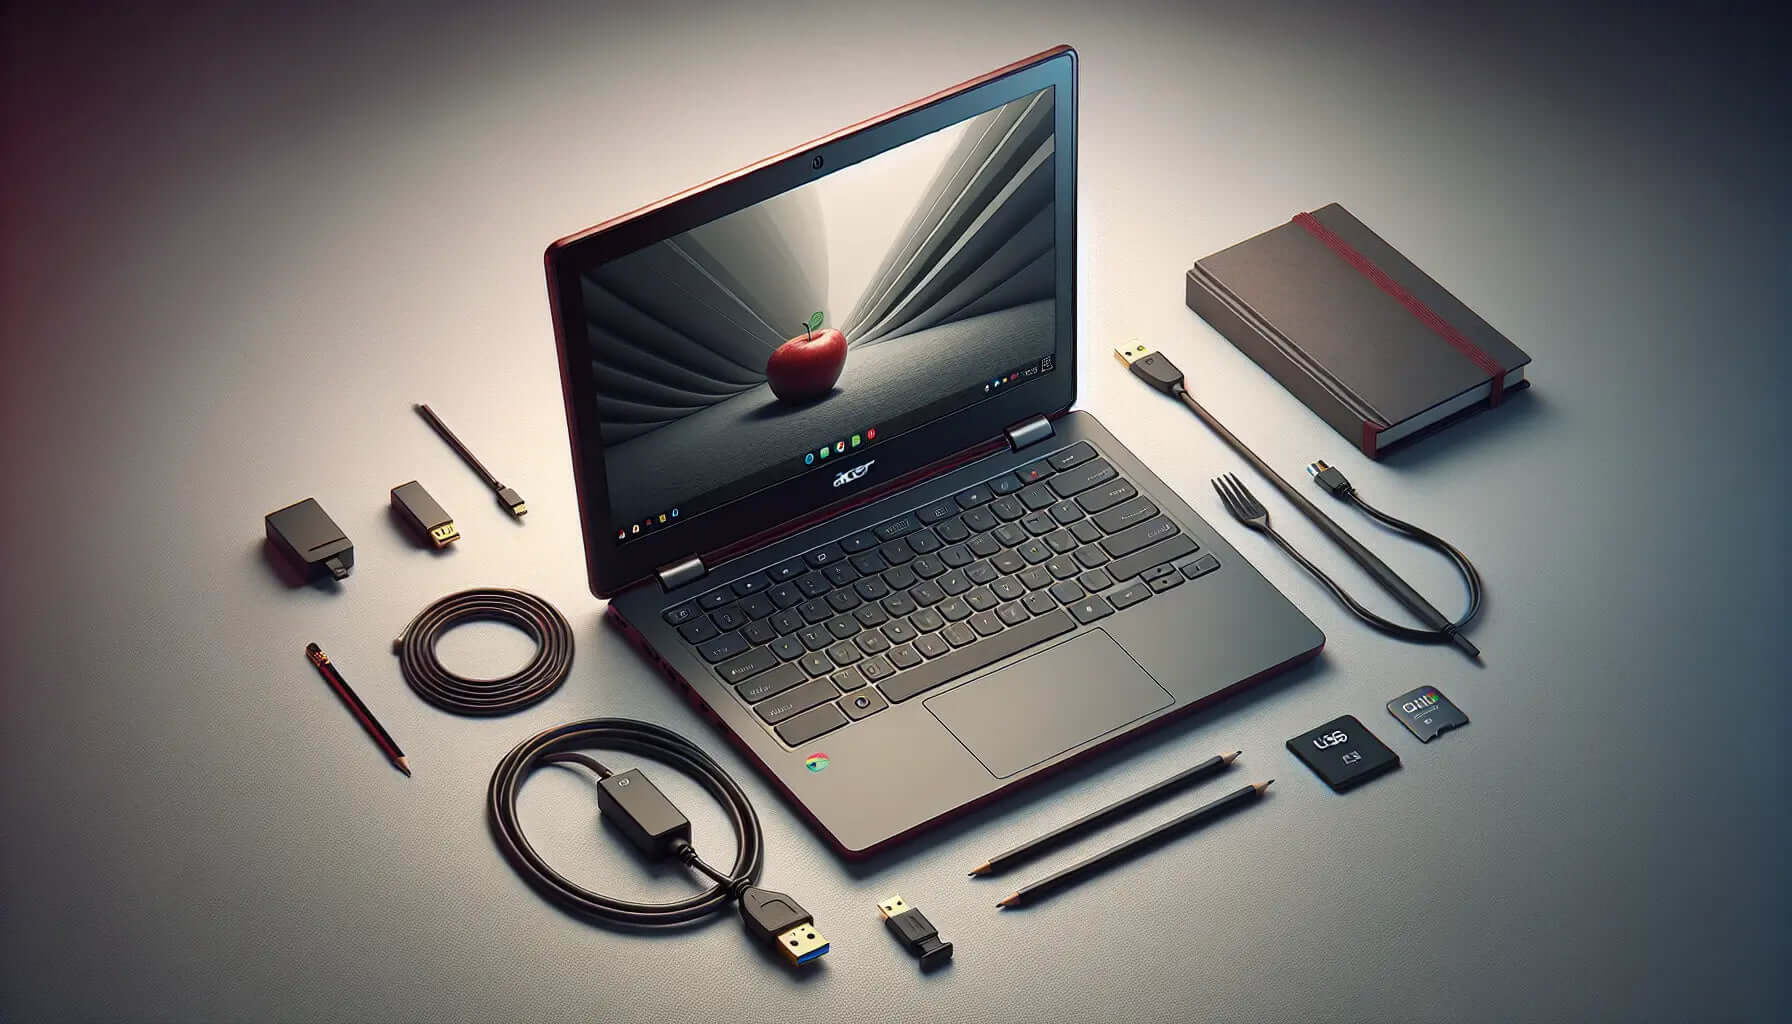 Acer C720: Affordable, Efficient Chromebook